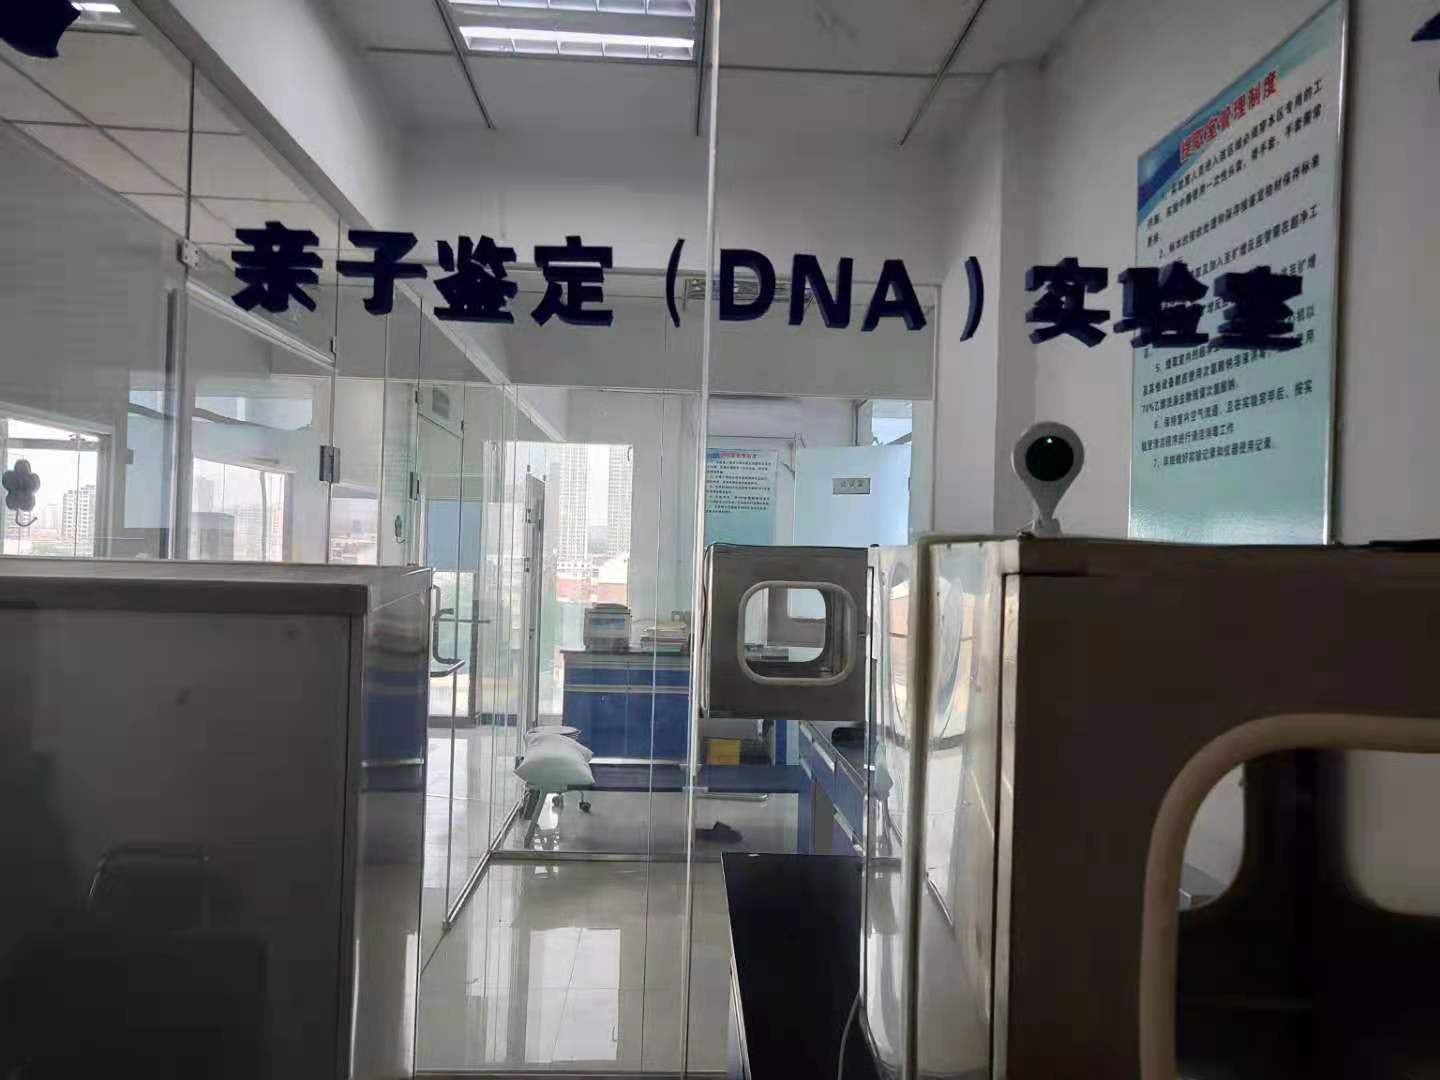 松原市亲子DNA鉴定流程 长春市鉴科生物技术服务有限公司